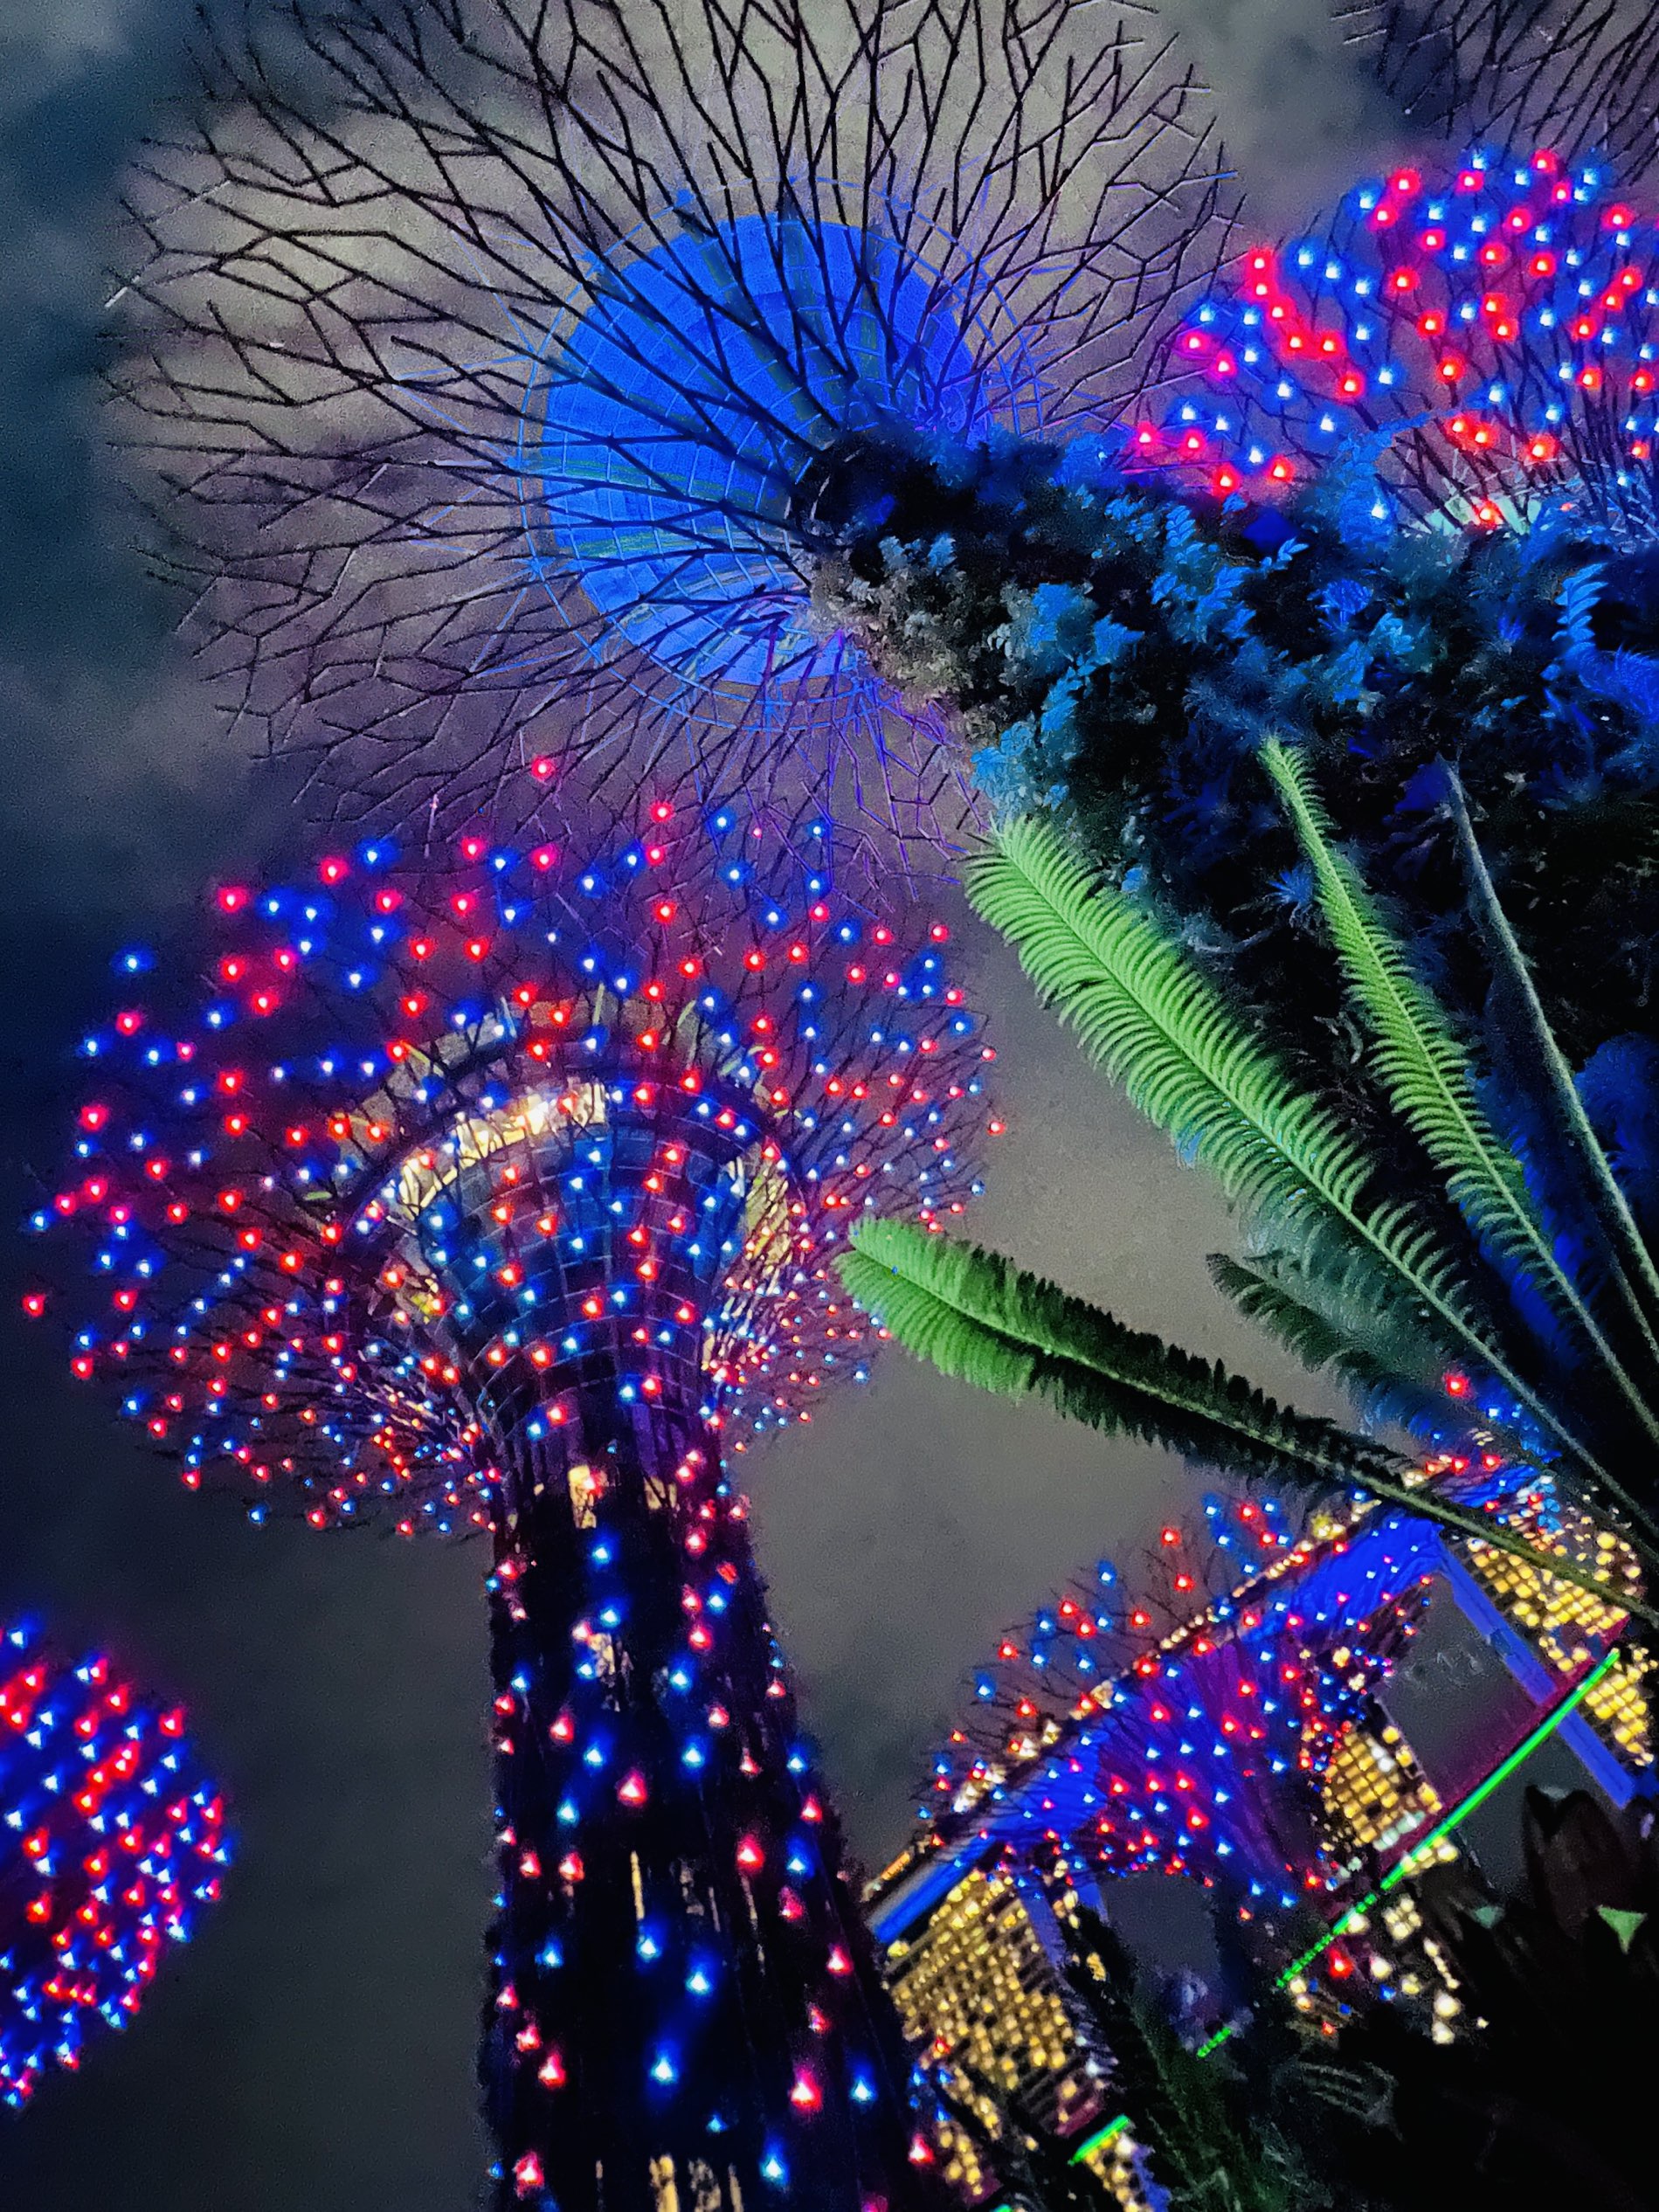 Singapore's Gardens by the Bay Light show | Trip.com Singapore